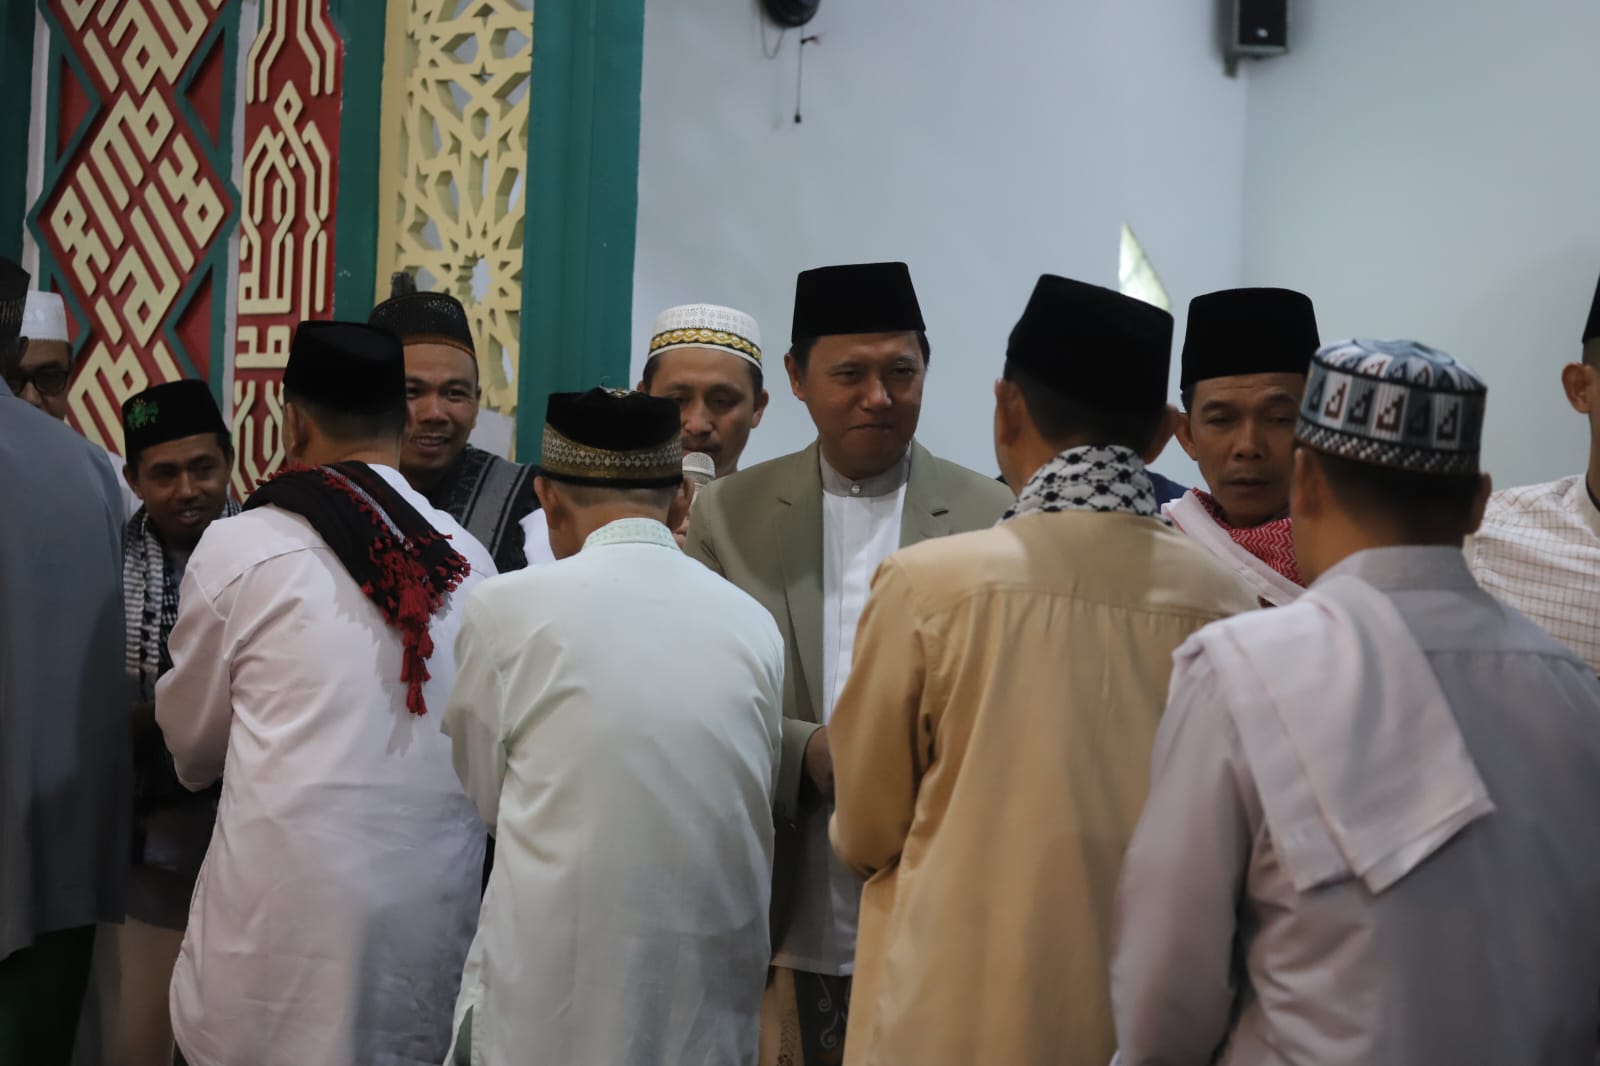 Pj Bupati Lampung Barat, Dandim dan Ketua MUI Shalat Id di Masjid Agung Baiturrahim